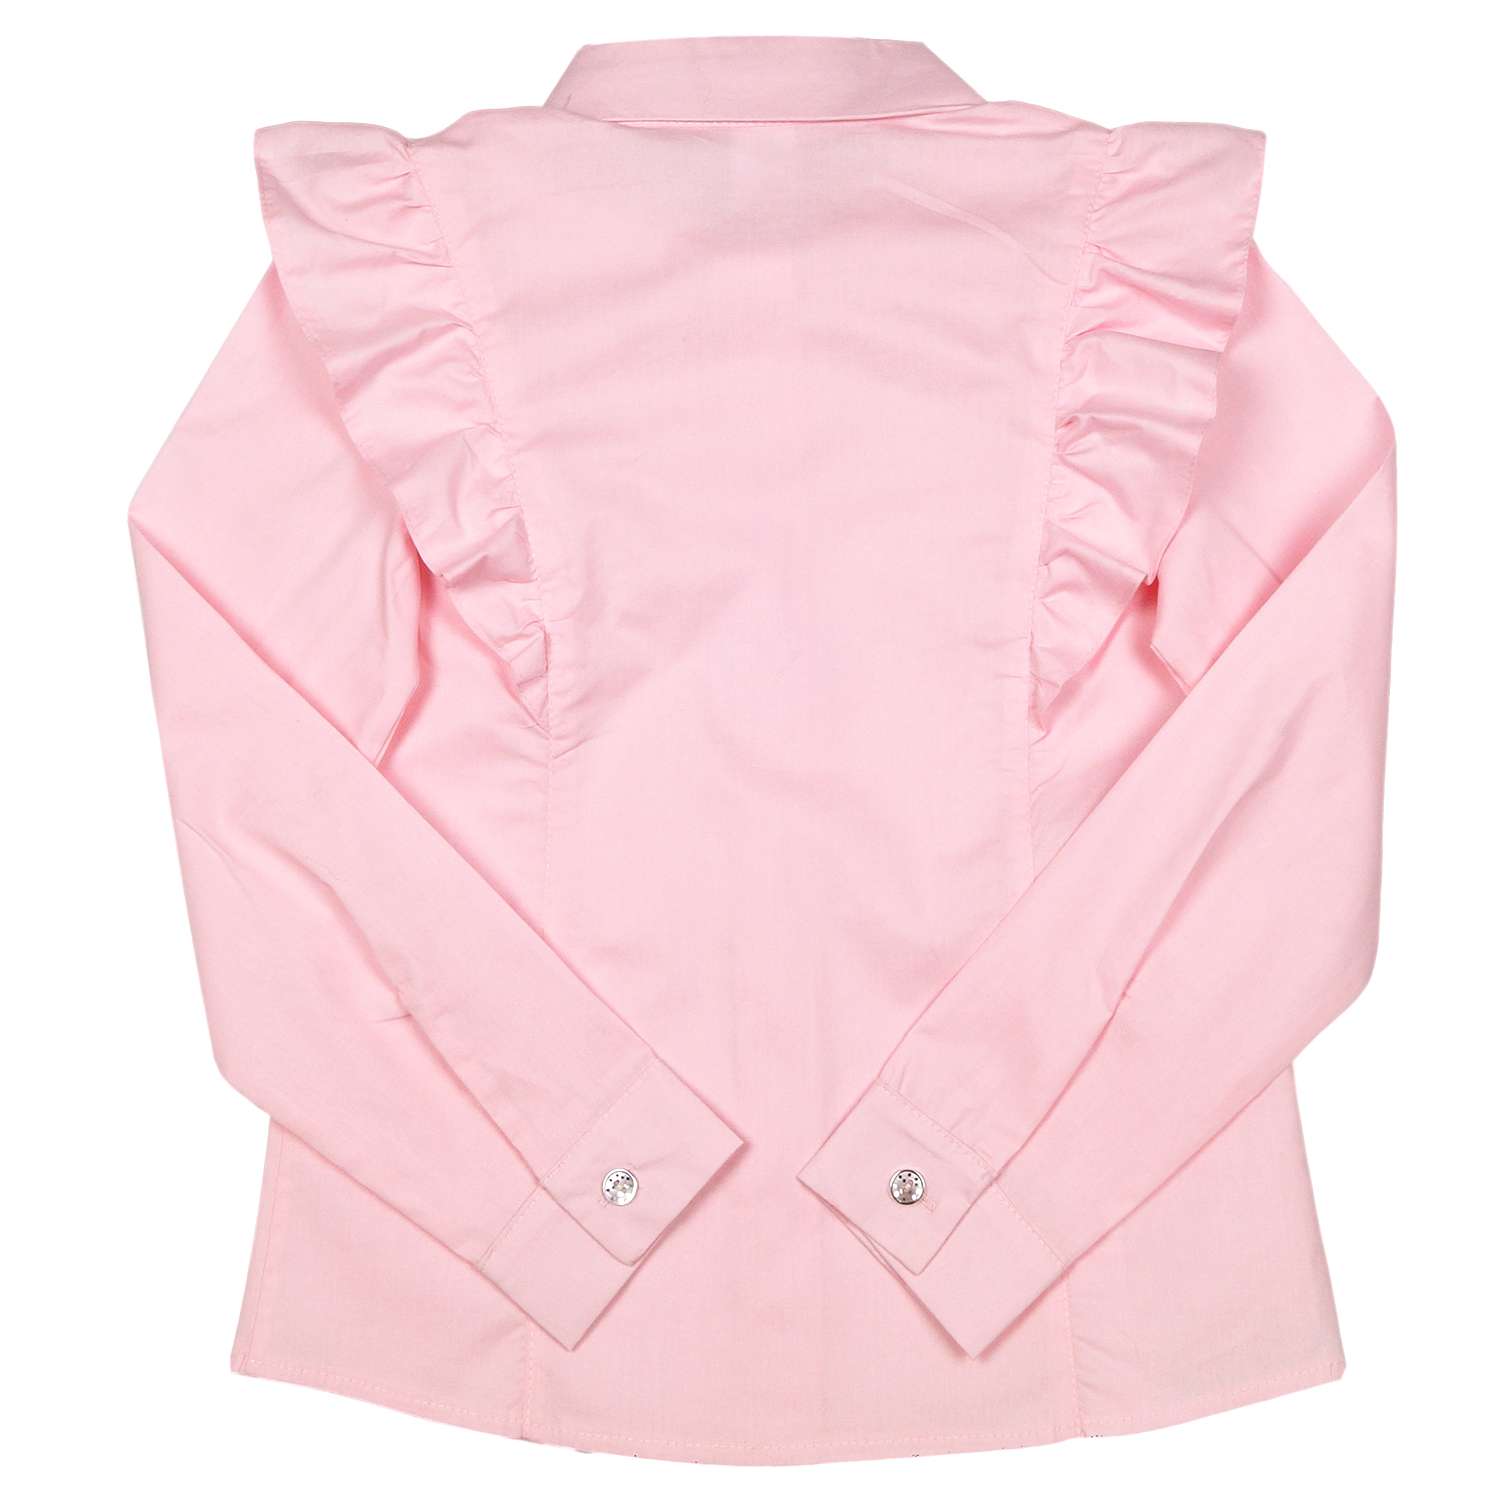 Блузка Детская Одежда BL-11000/розовый - фото 9